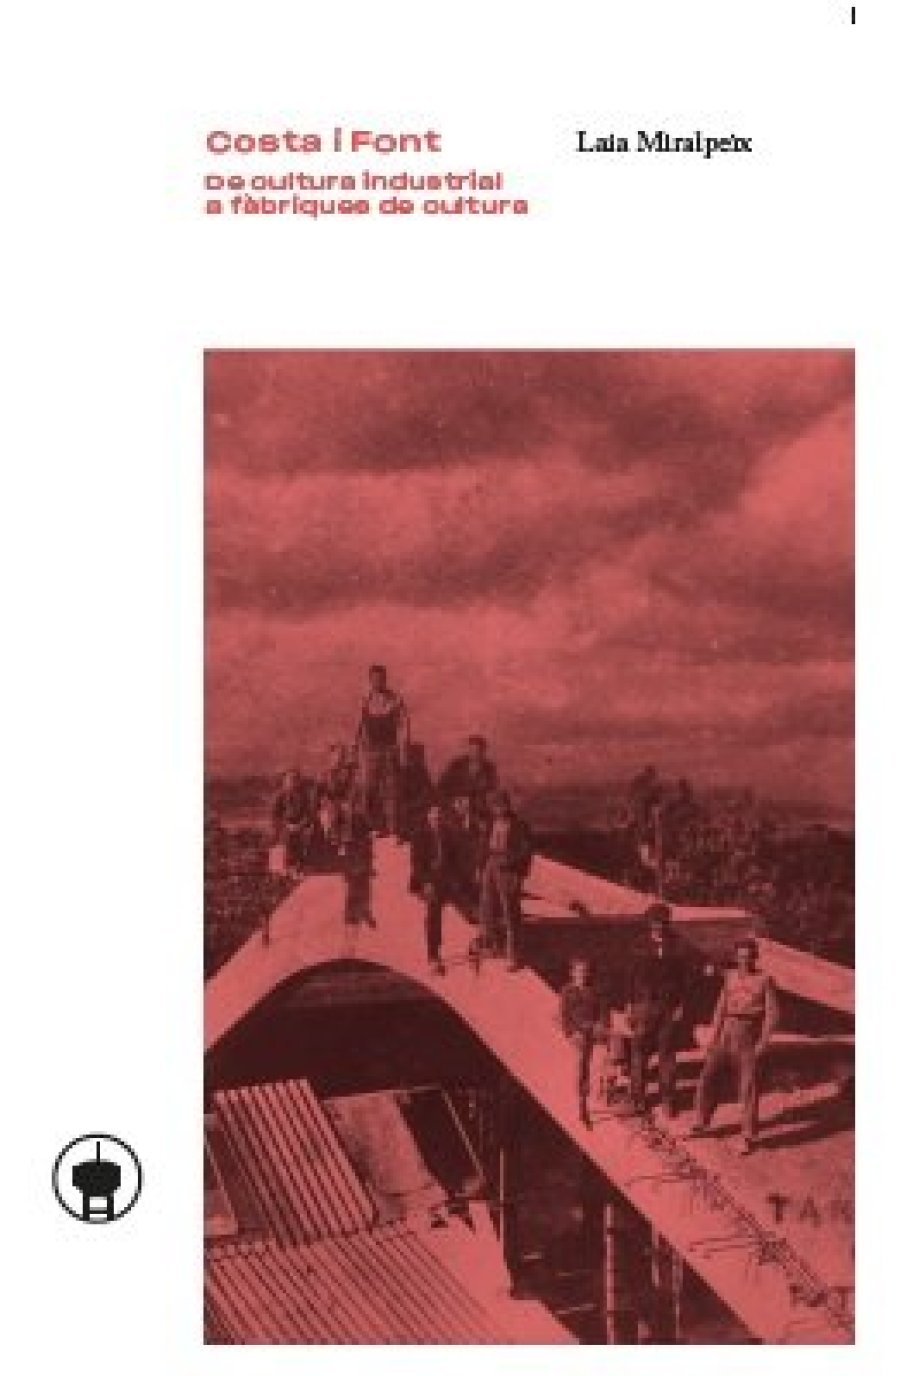 Portada llibre “Costa i Font, de cultura industrial a fàbriques de cultura”